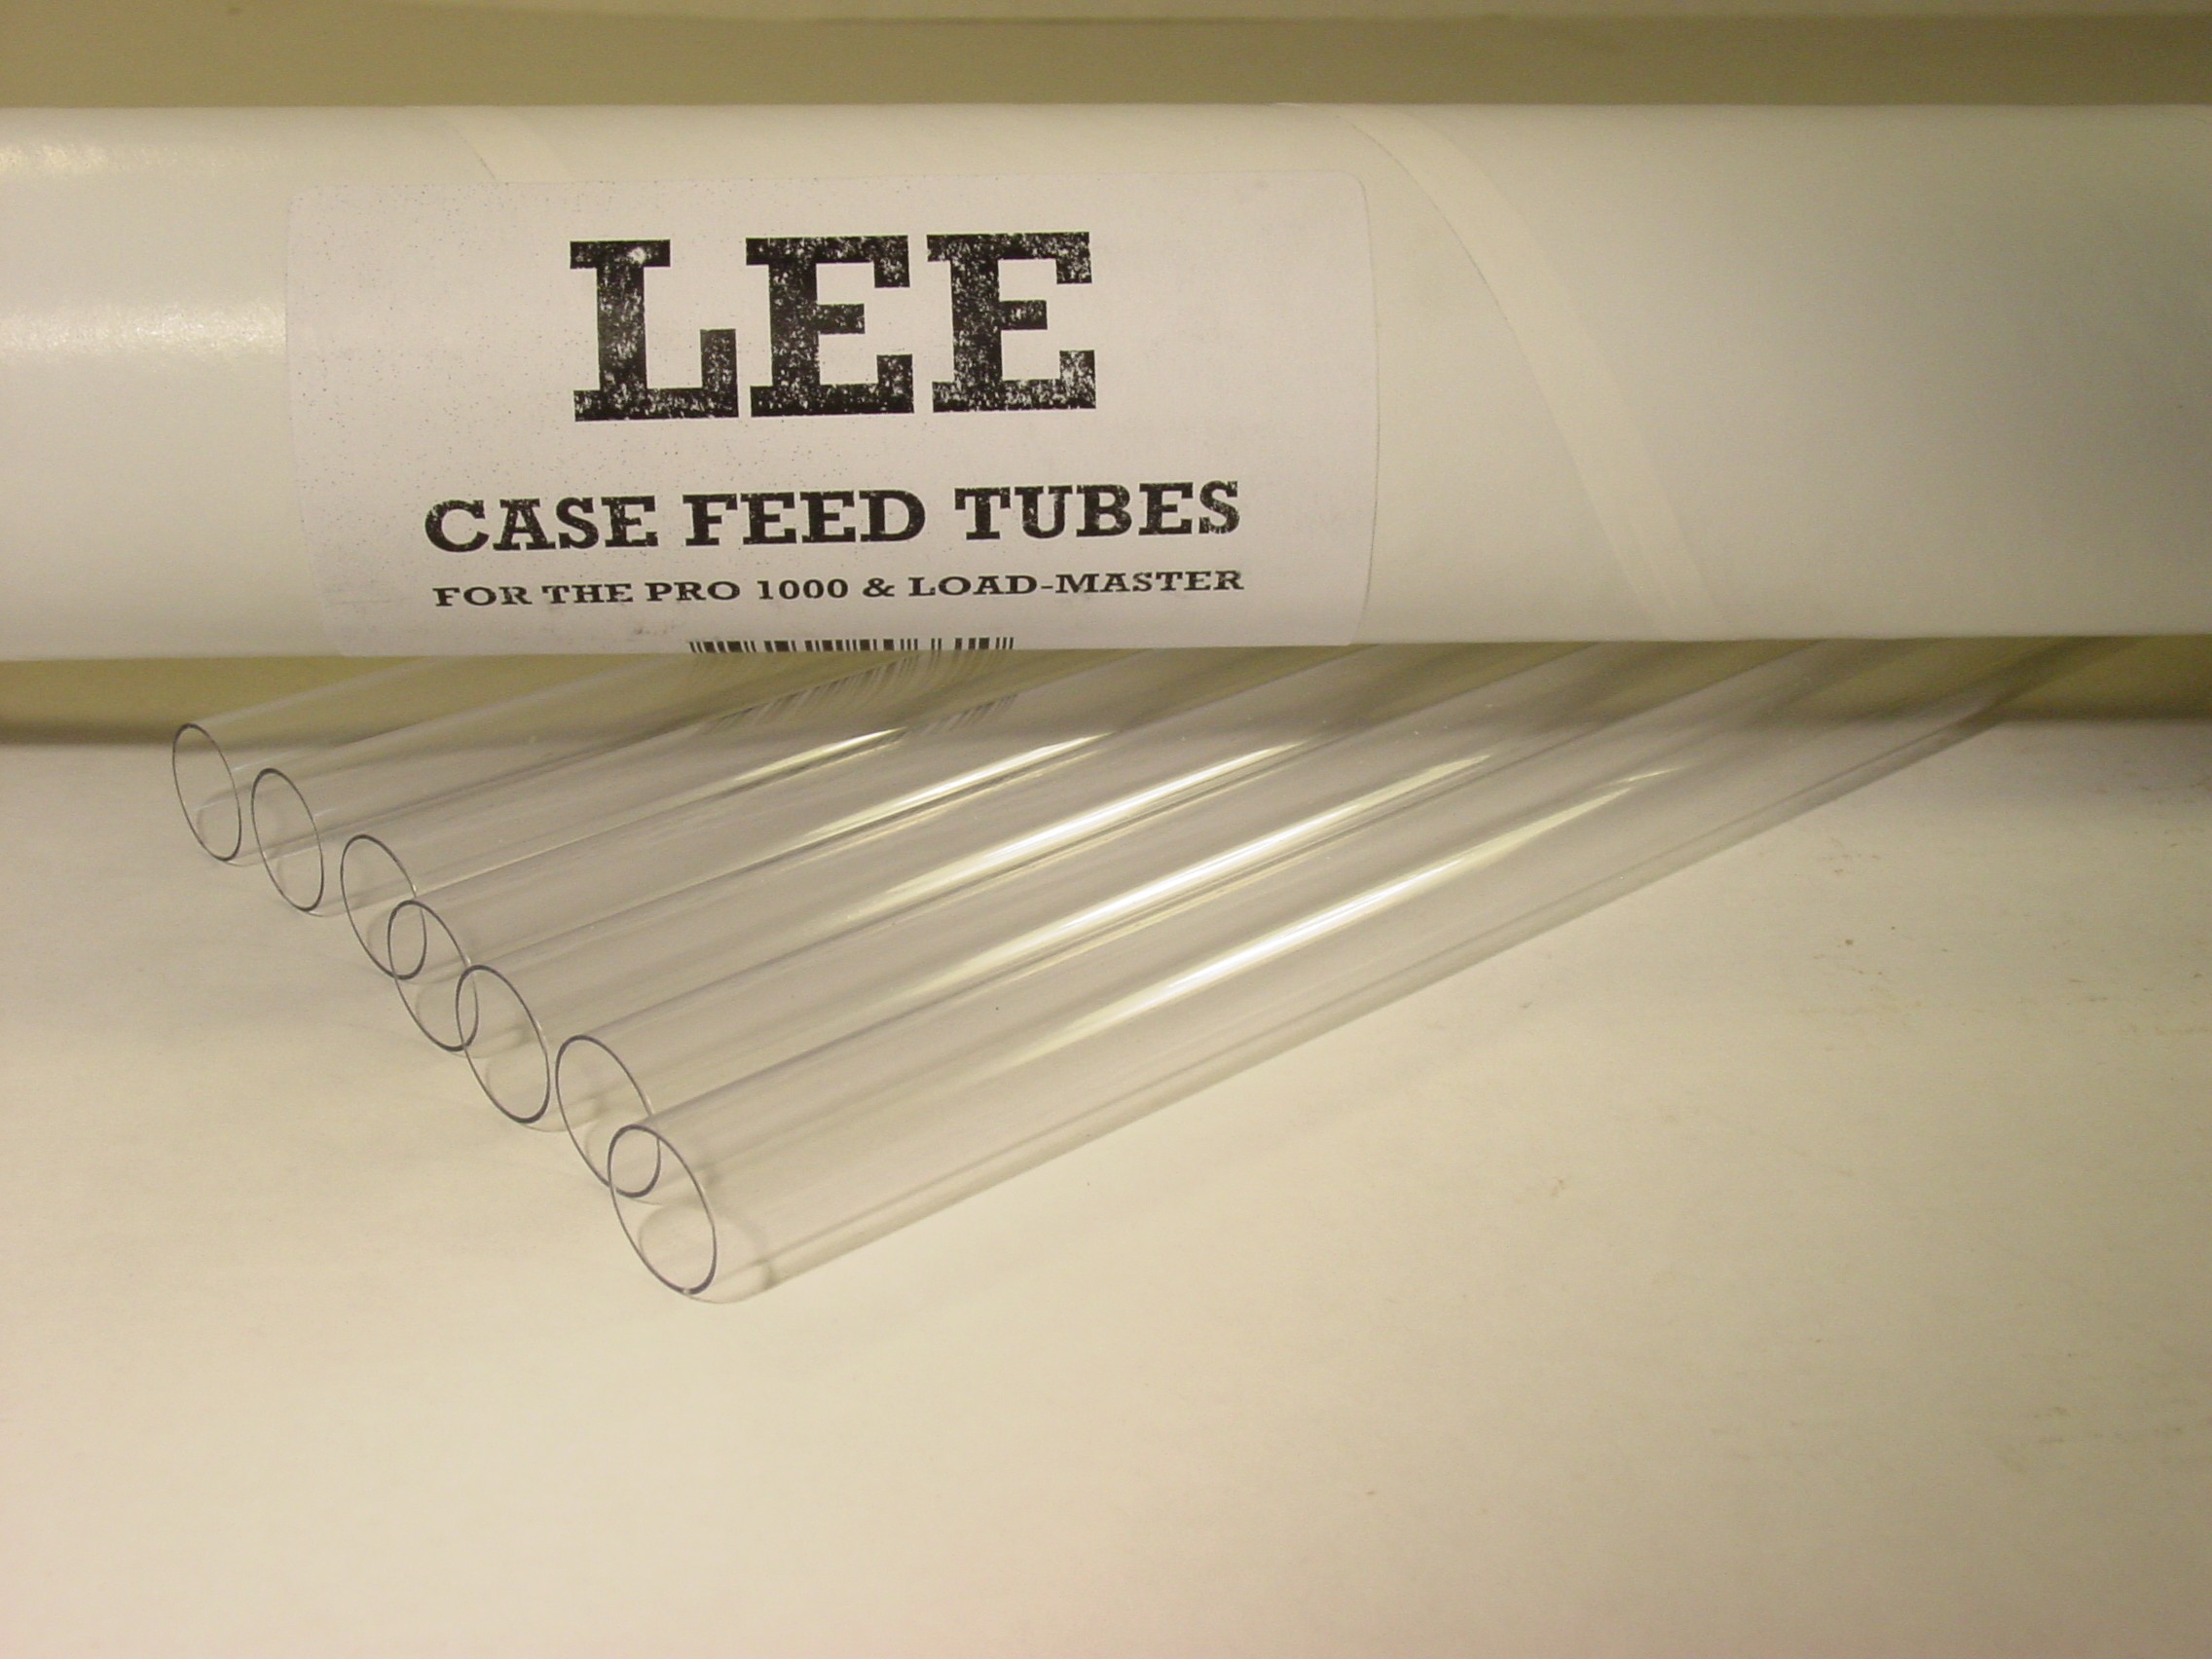 Lee Pro 1000, Load-Master Progressive Press Case Feeder Tubes Package of 7 (SKU 90661)